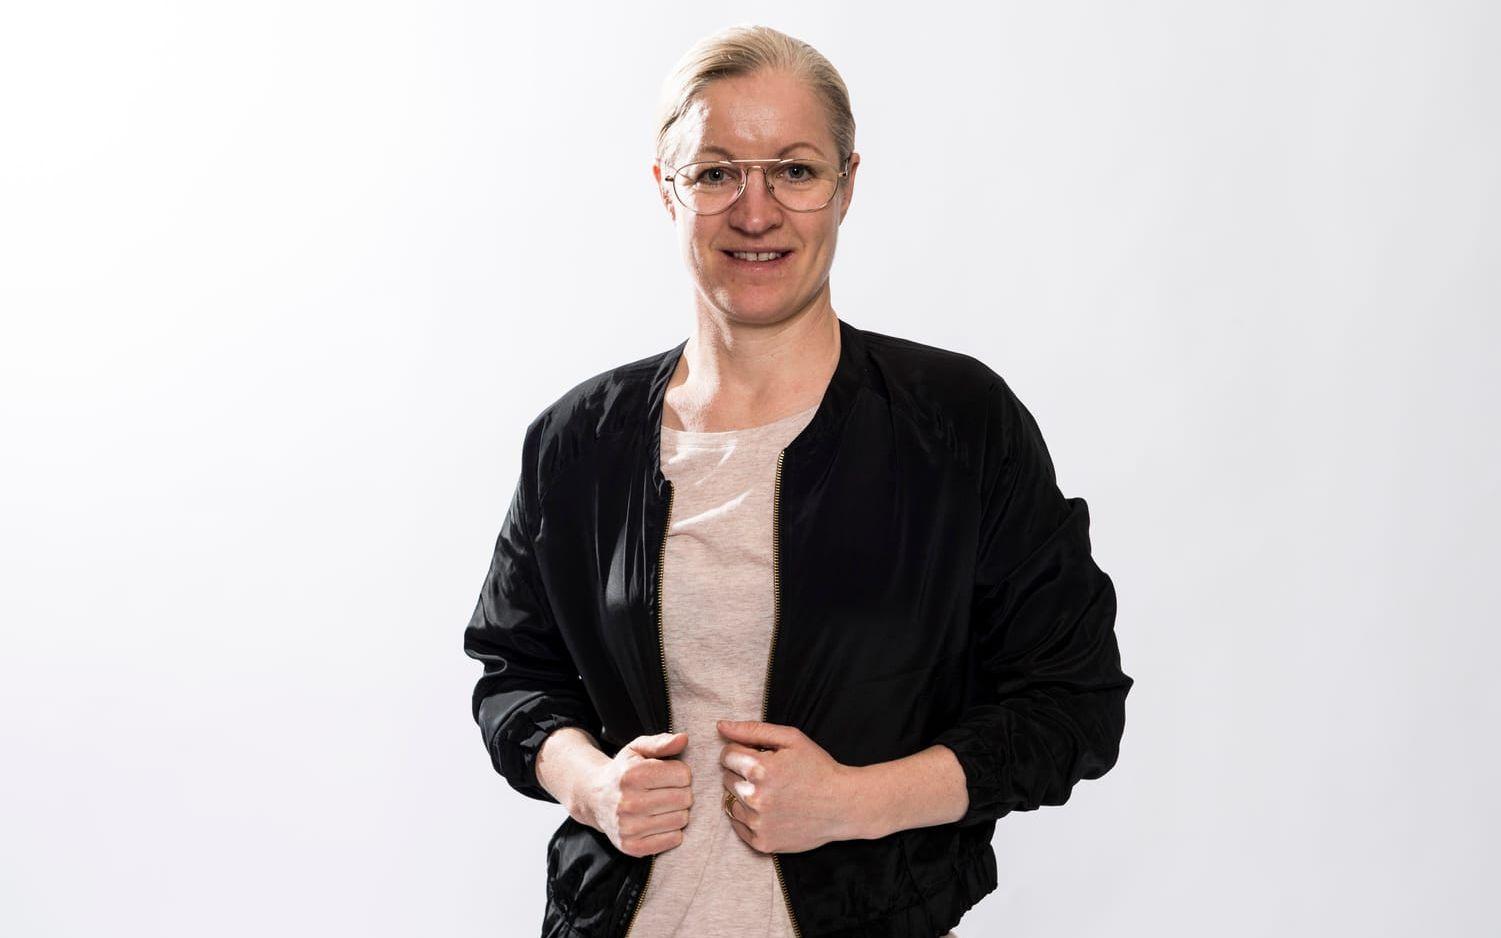 2009 lade Victoria Sandell Svensson ner sin spelarkarriär. Efter det har hon arbetat som ambassadör för Lilla barnets fond och som sportchef för Djurgården. Bildbyrån.